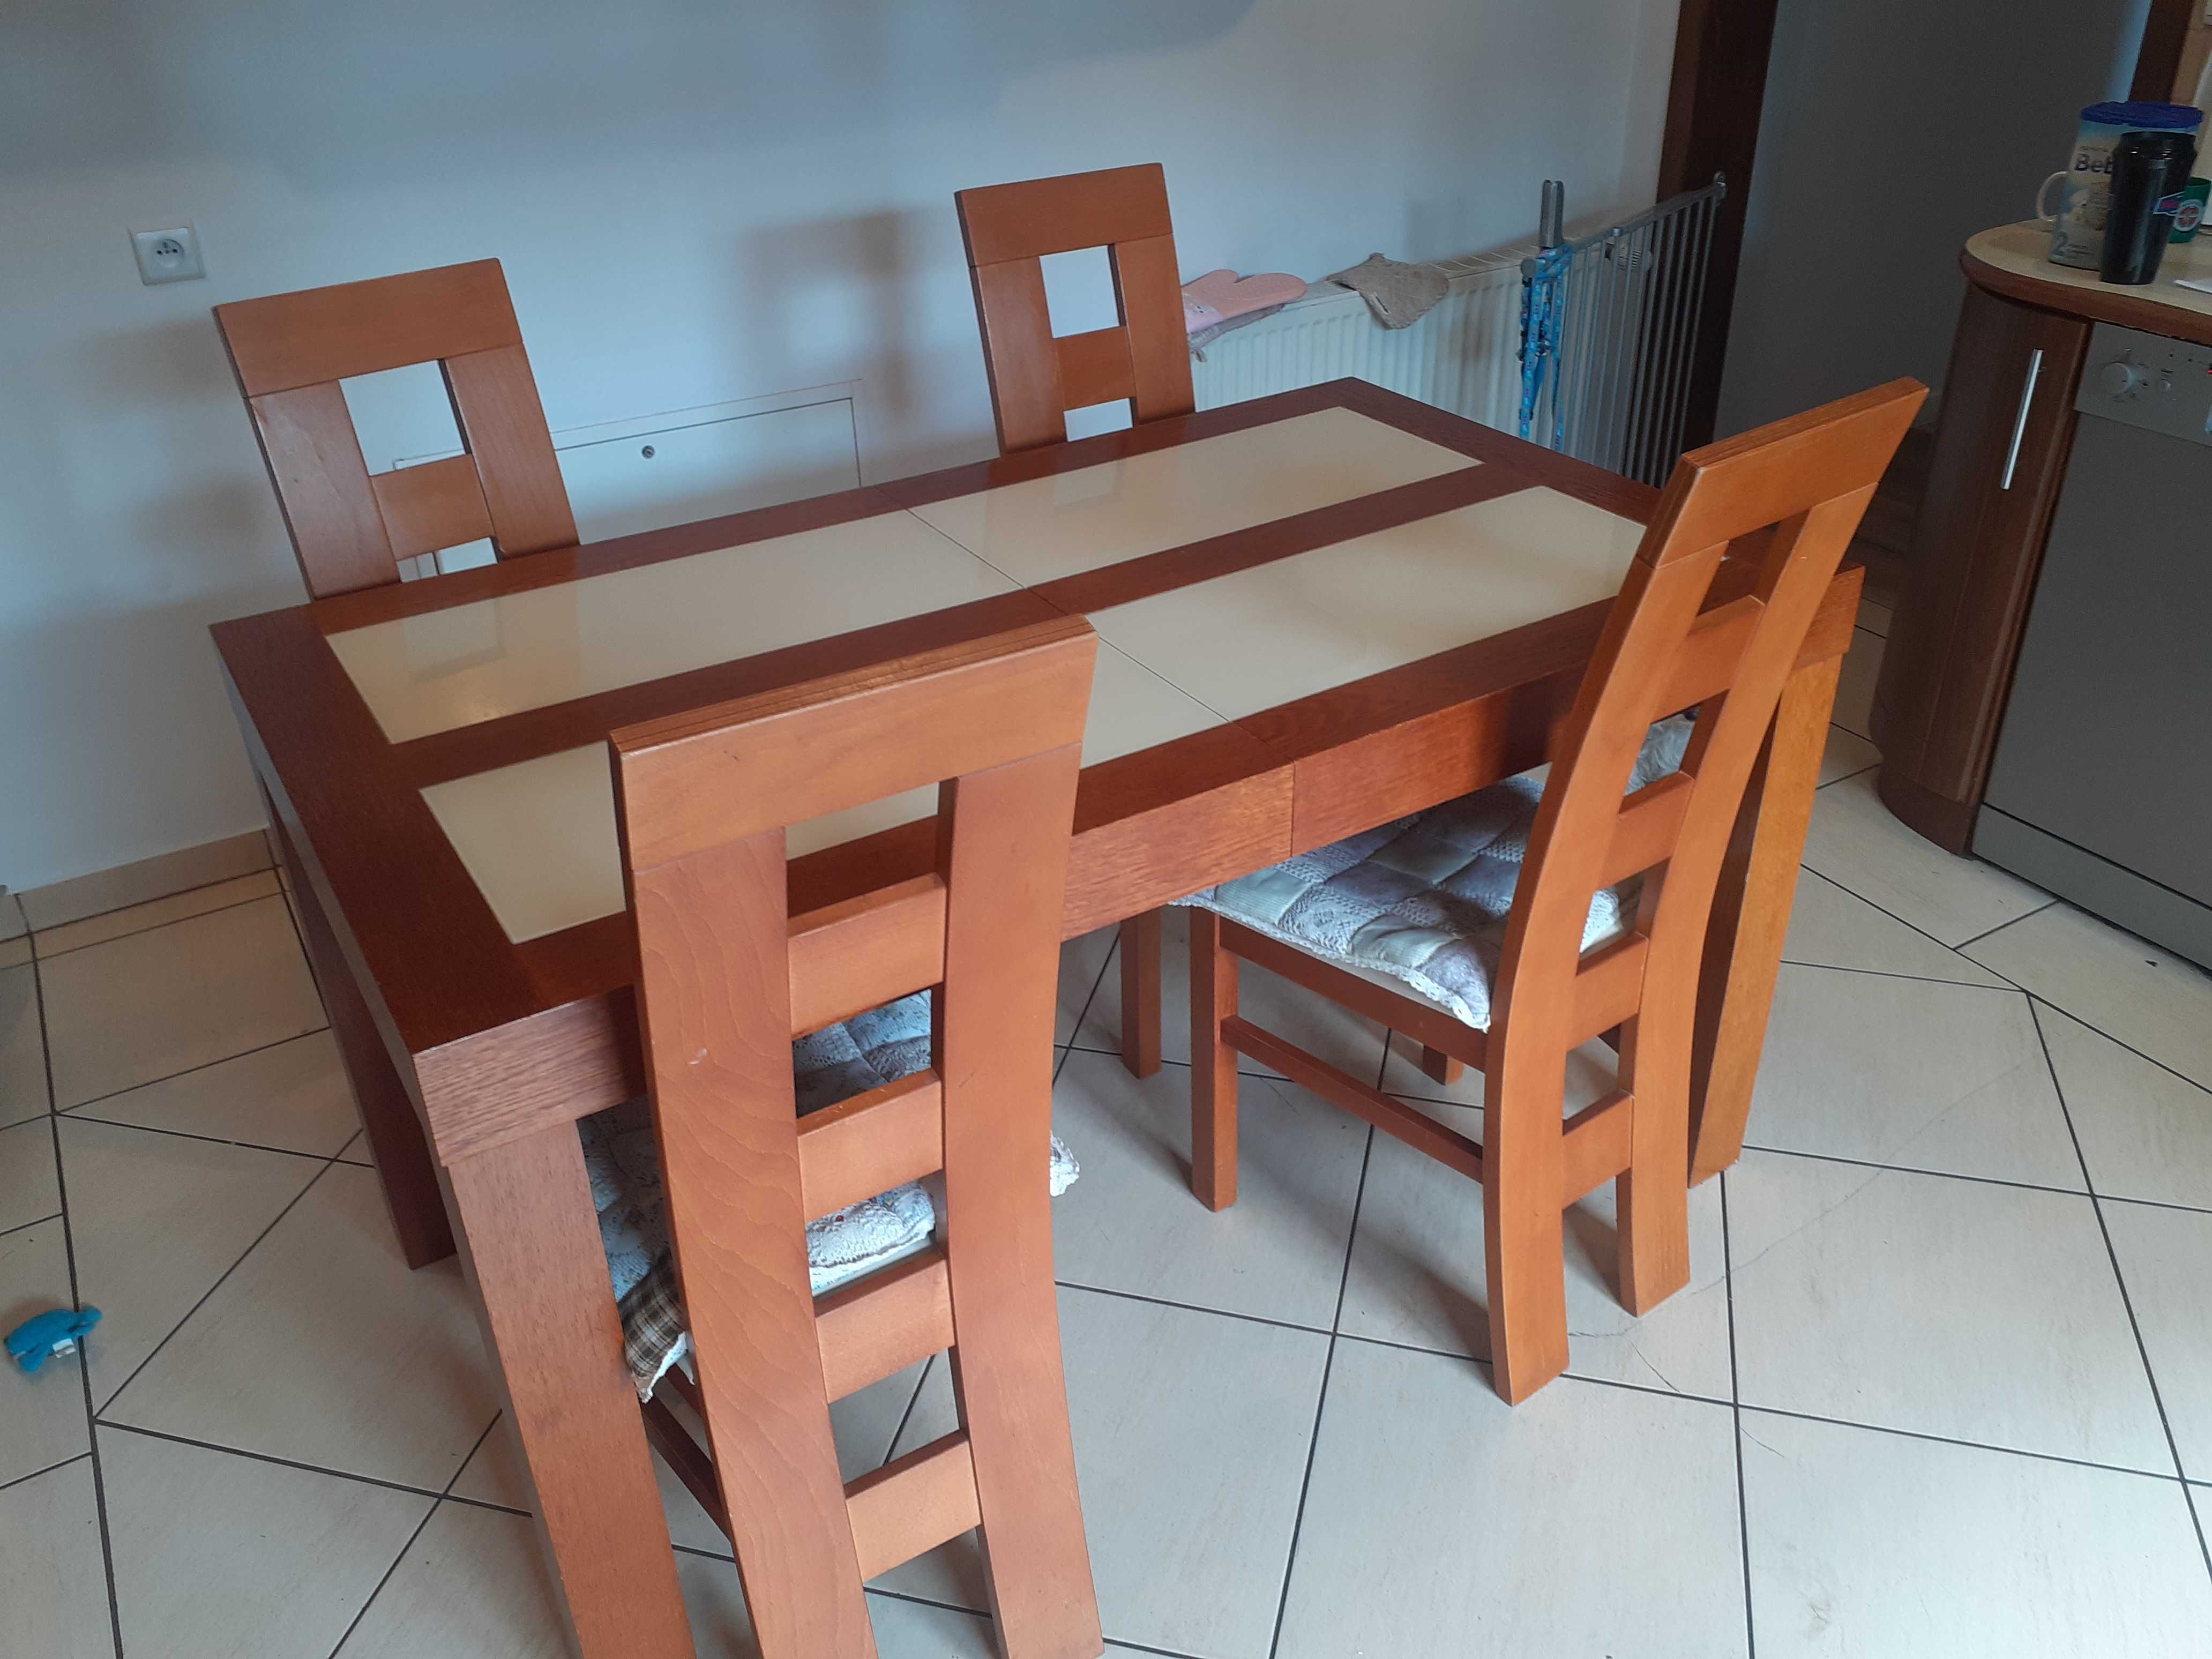 krzesła i stół używane